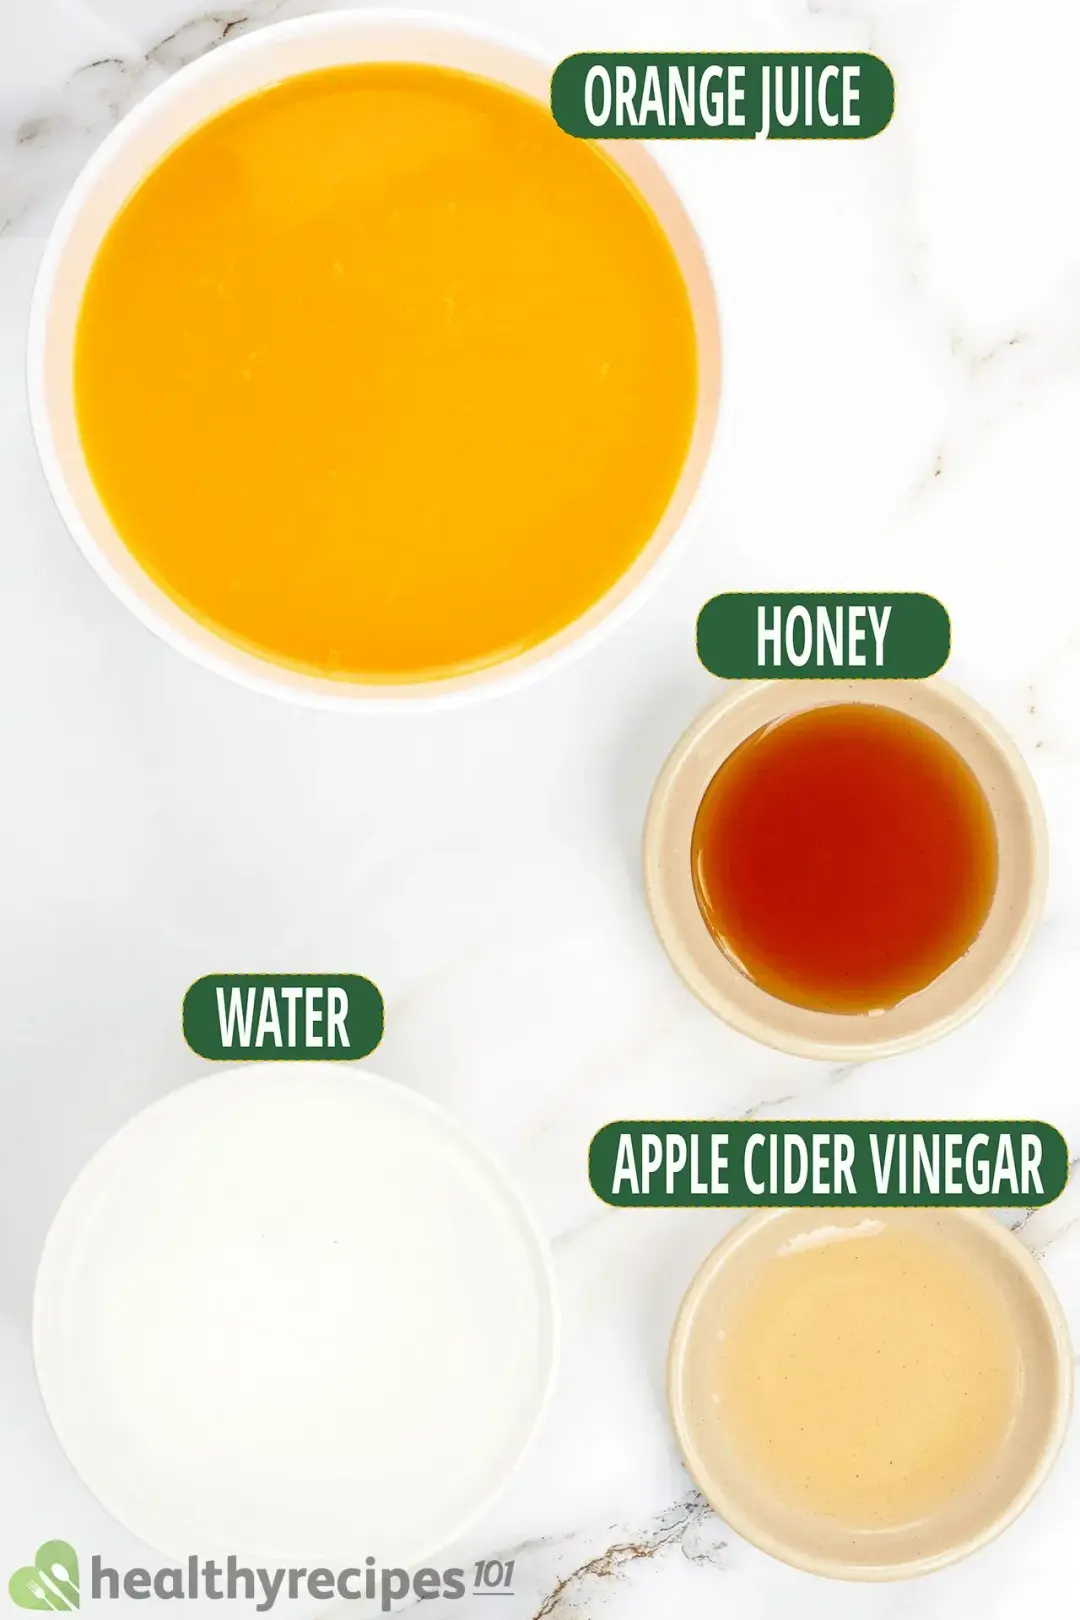 Ingredients in separate bowls: orange juice, honey, apple cider vinegar, water